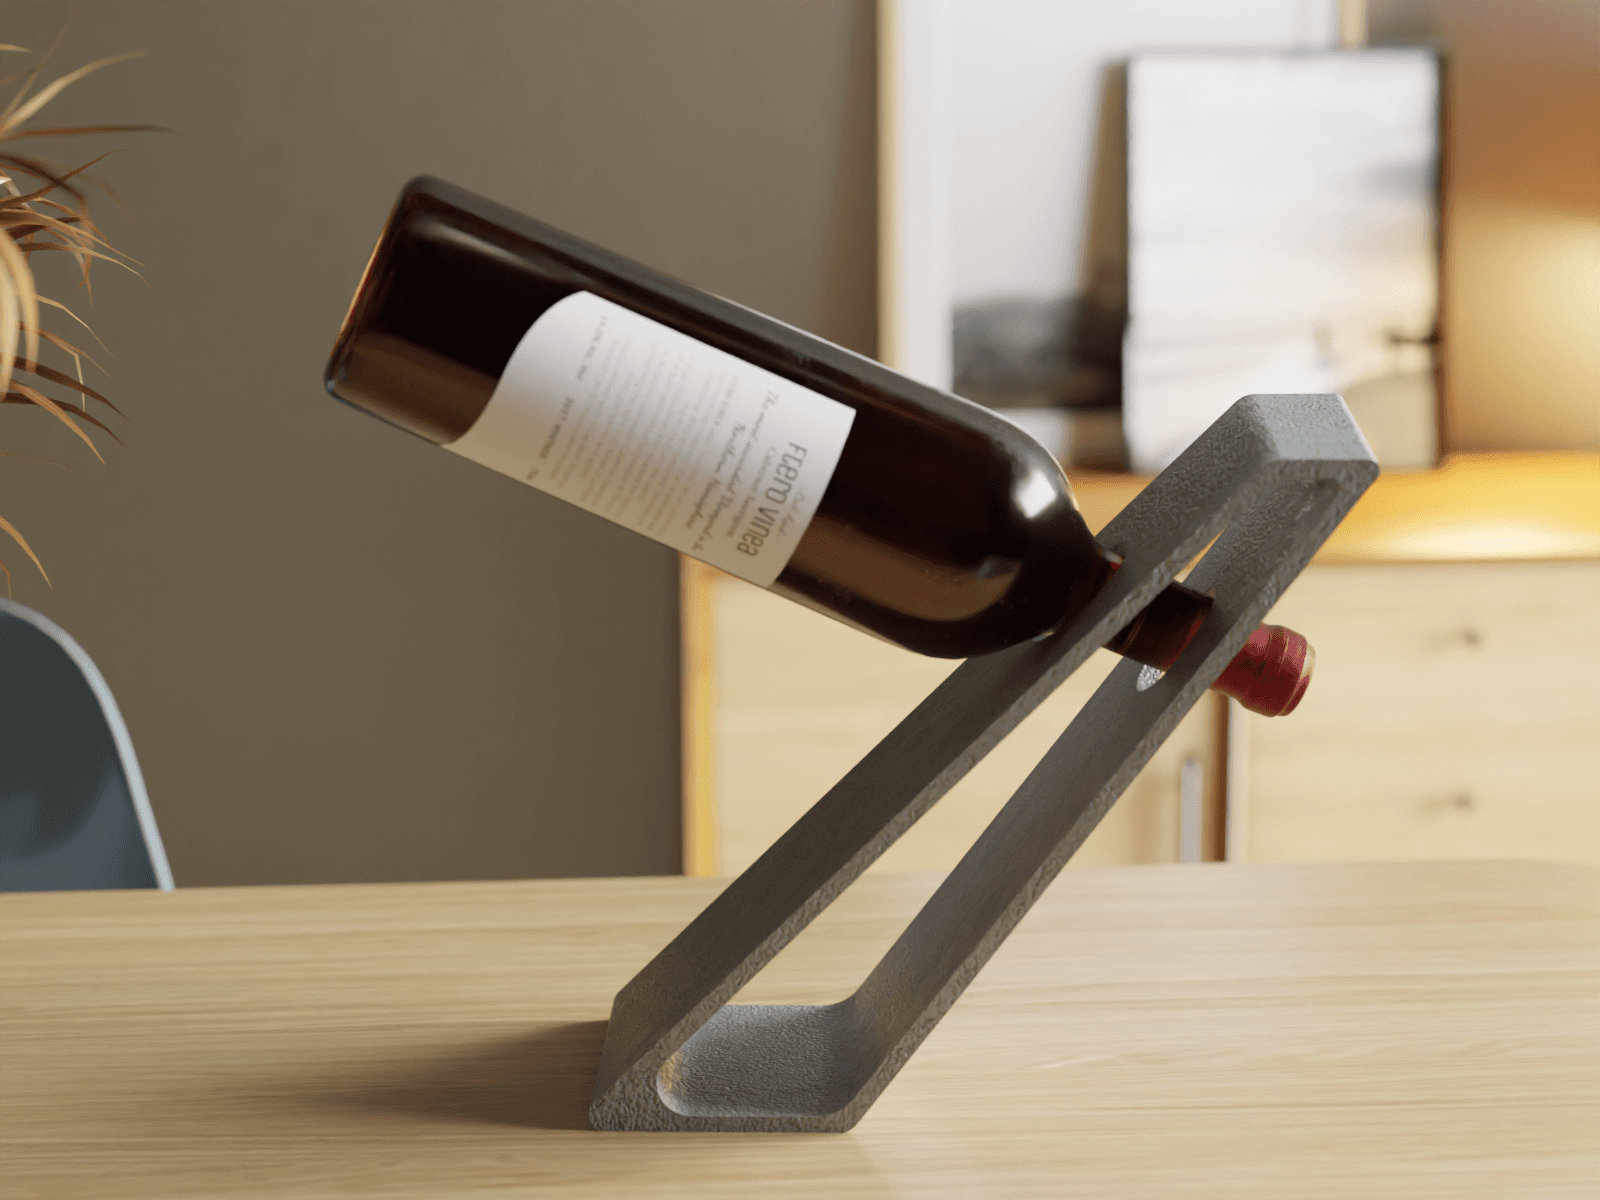 LevitaVin - The Gravity-Defying Wine Holder 3d model